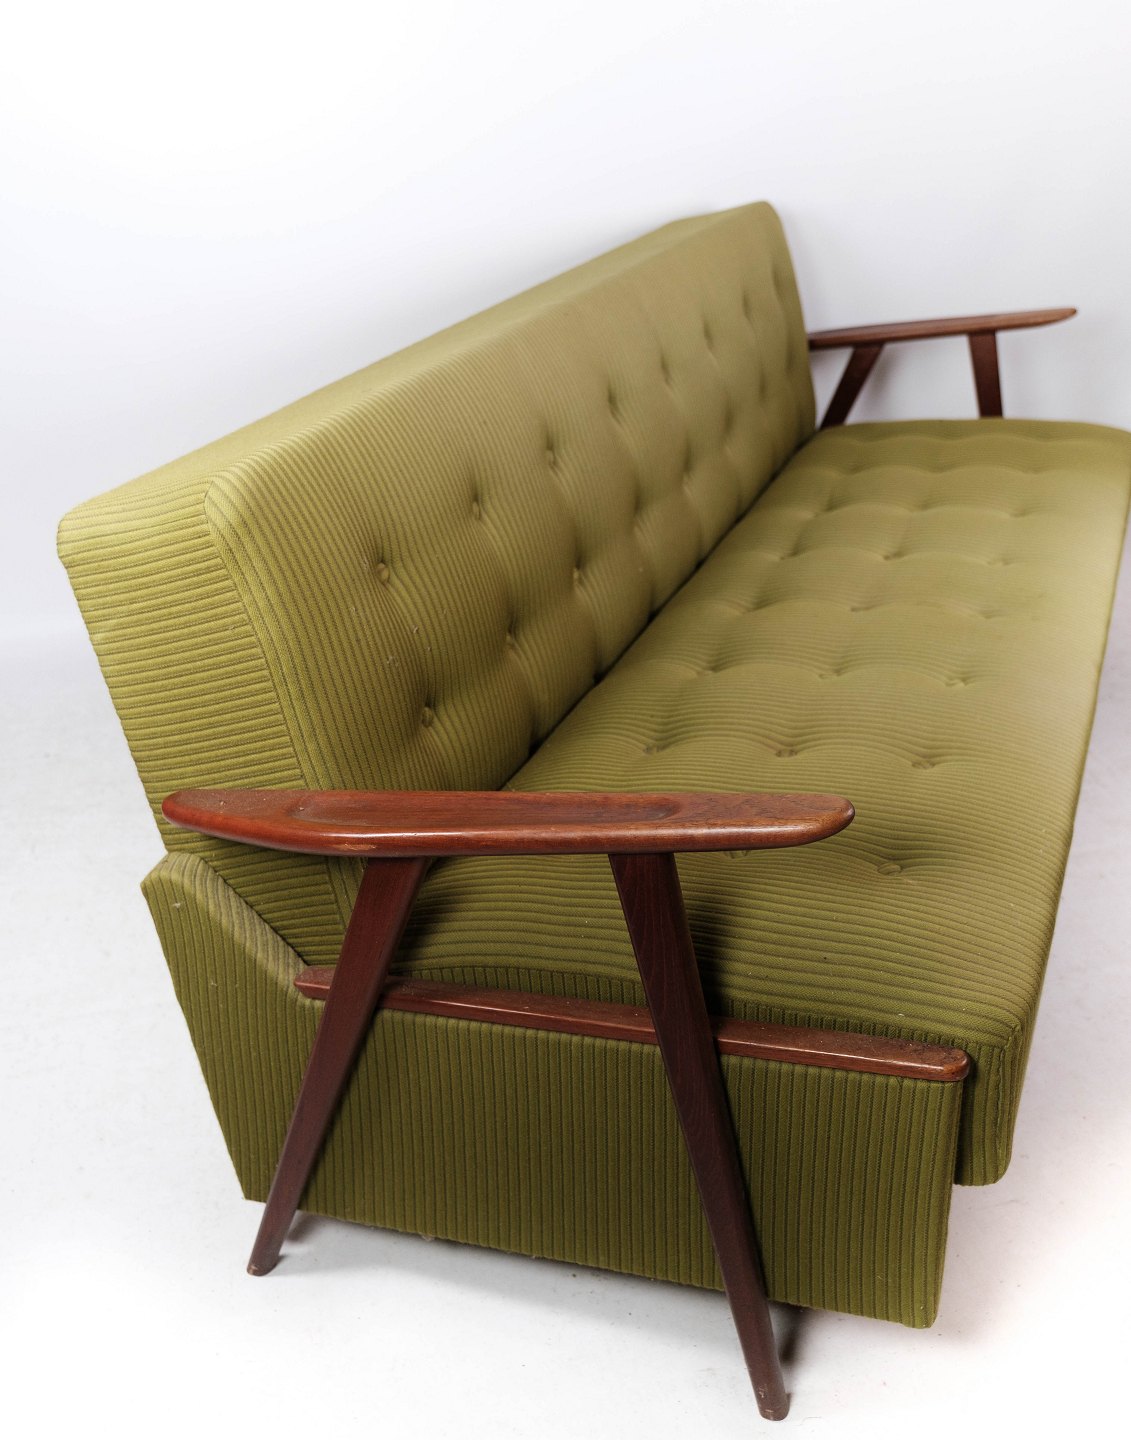 Sovesofa polstret med grønt uldstof og ben teak, af design 1950erne. - Osted Antik & Design